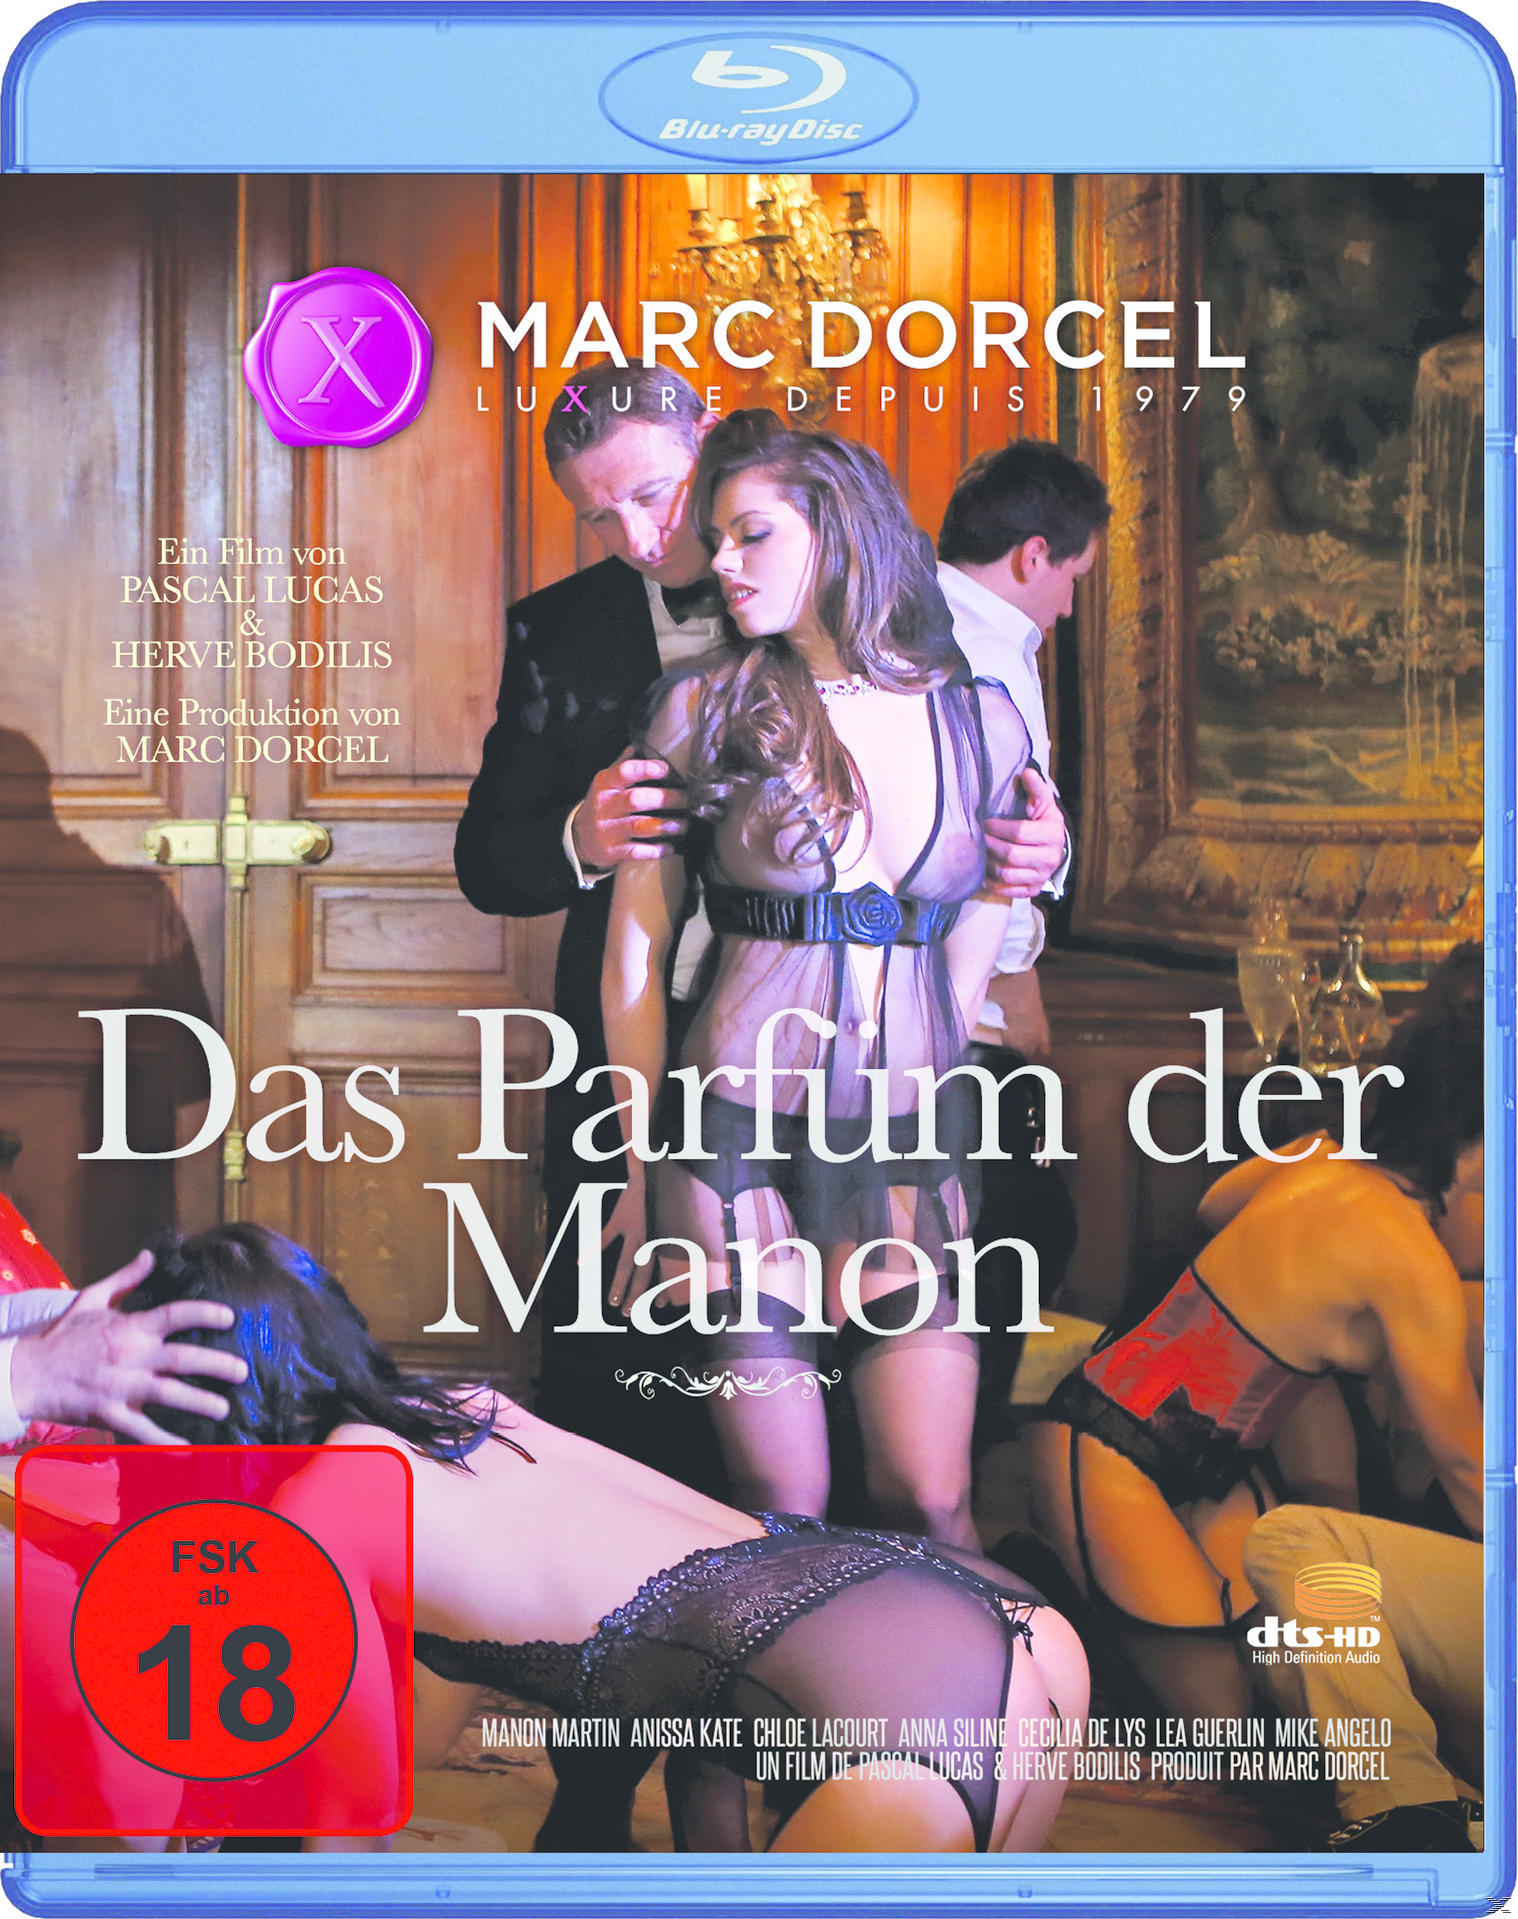 Das Parfüm Blu-ray der Manon